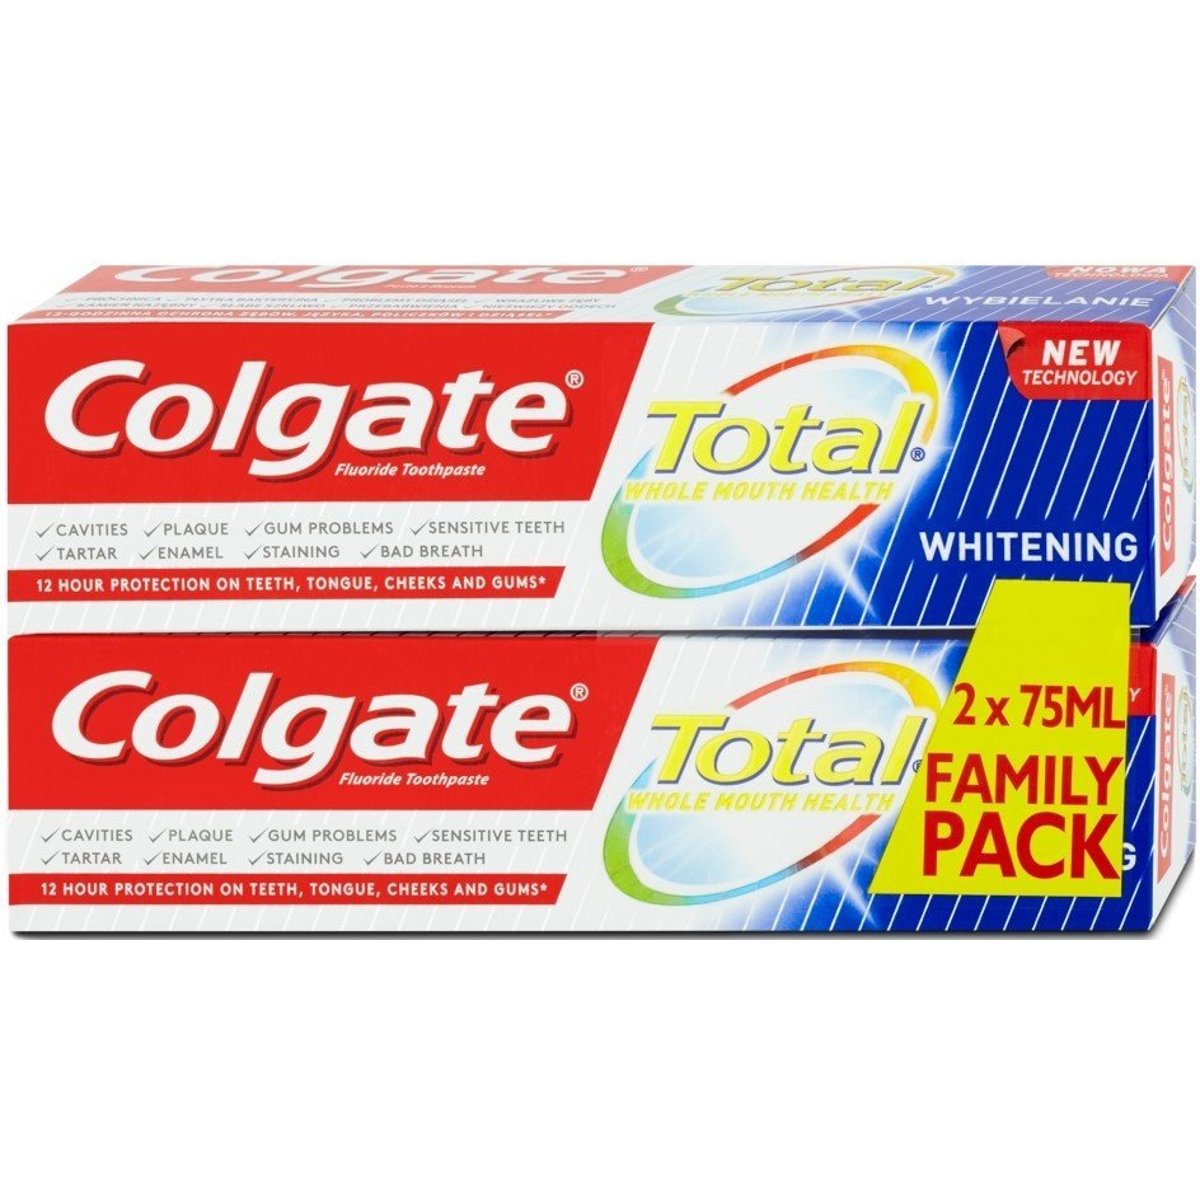 Colgate Total Whitening zubní pasta pro bílé zuby - duopack